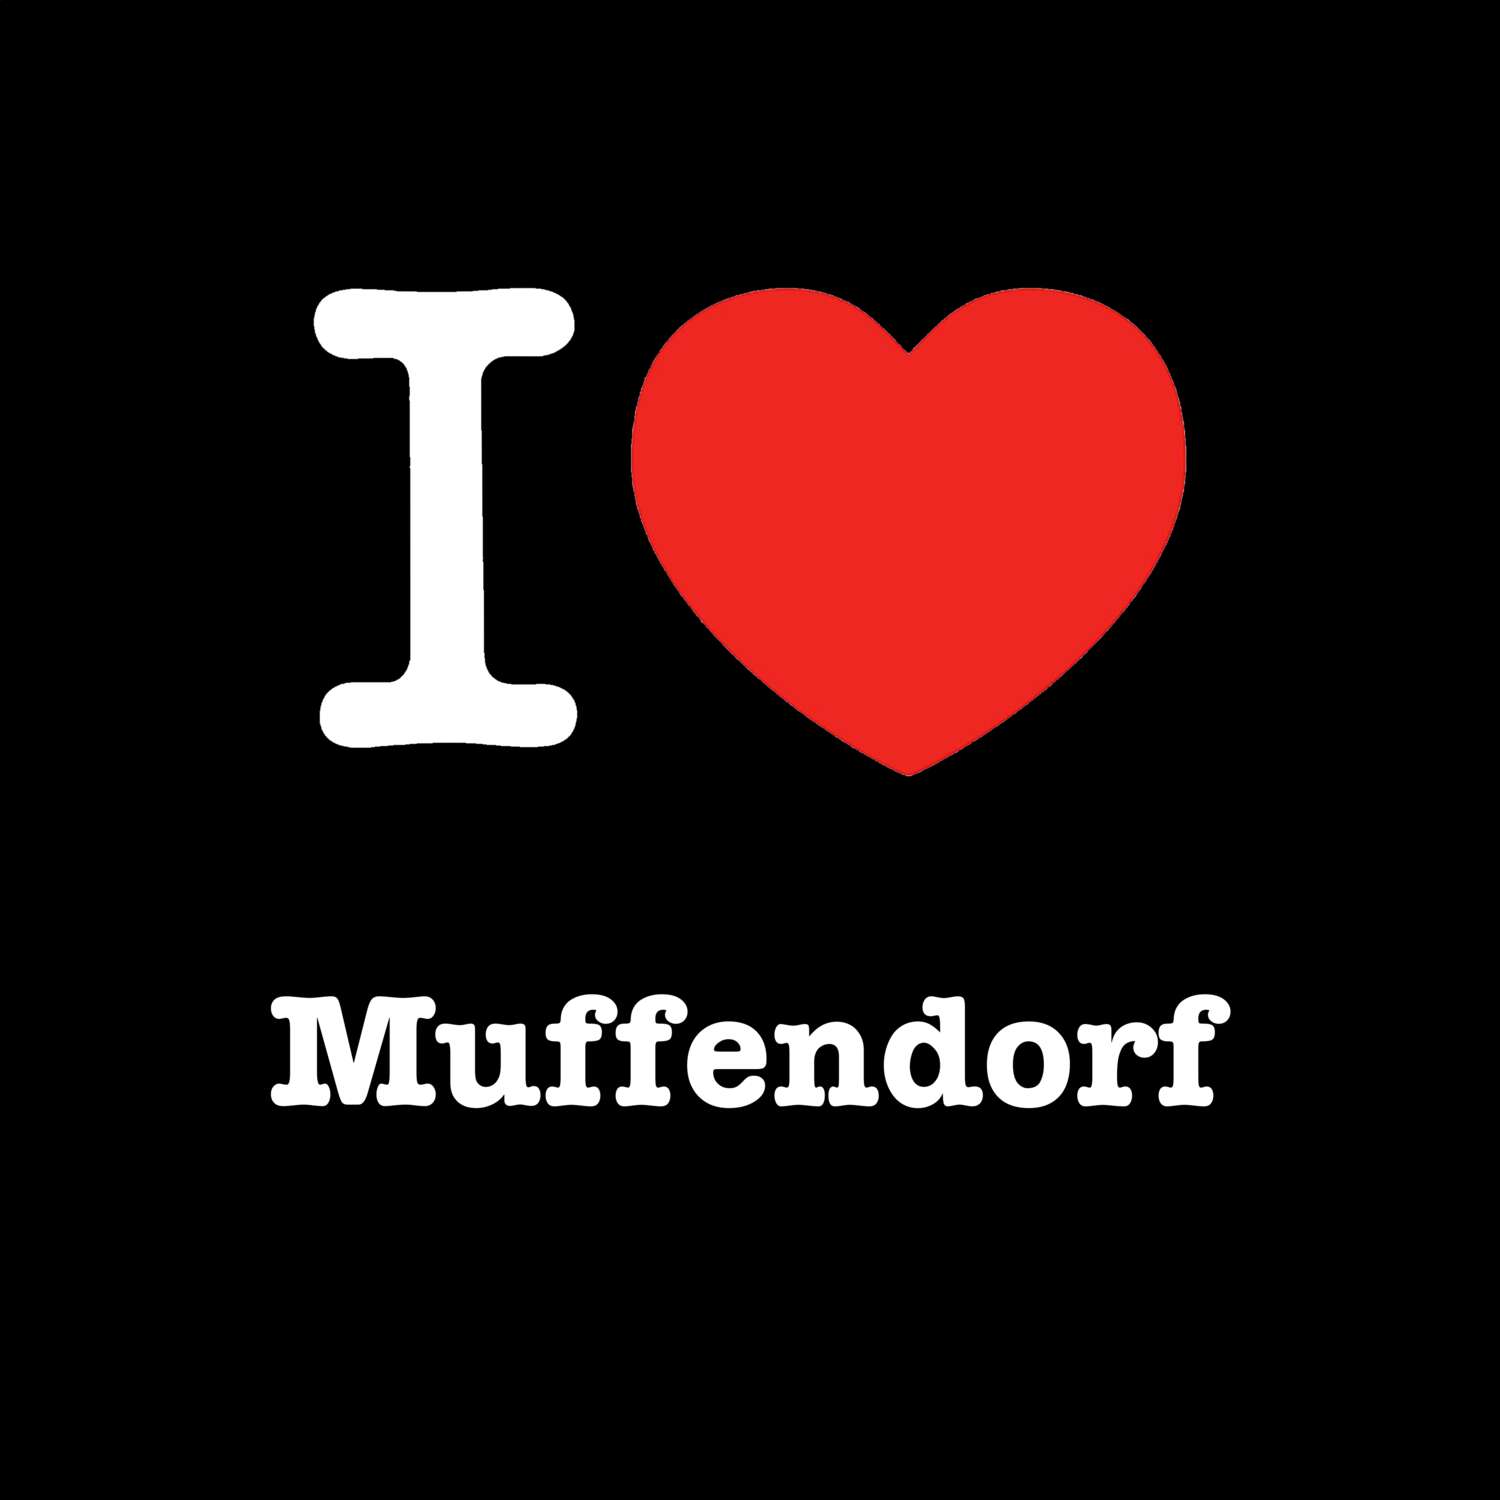 Muffendorf T-Shirt »I love«